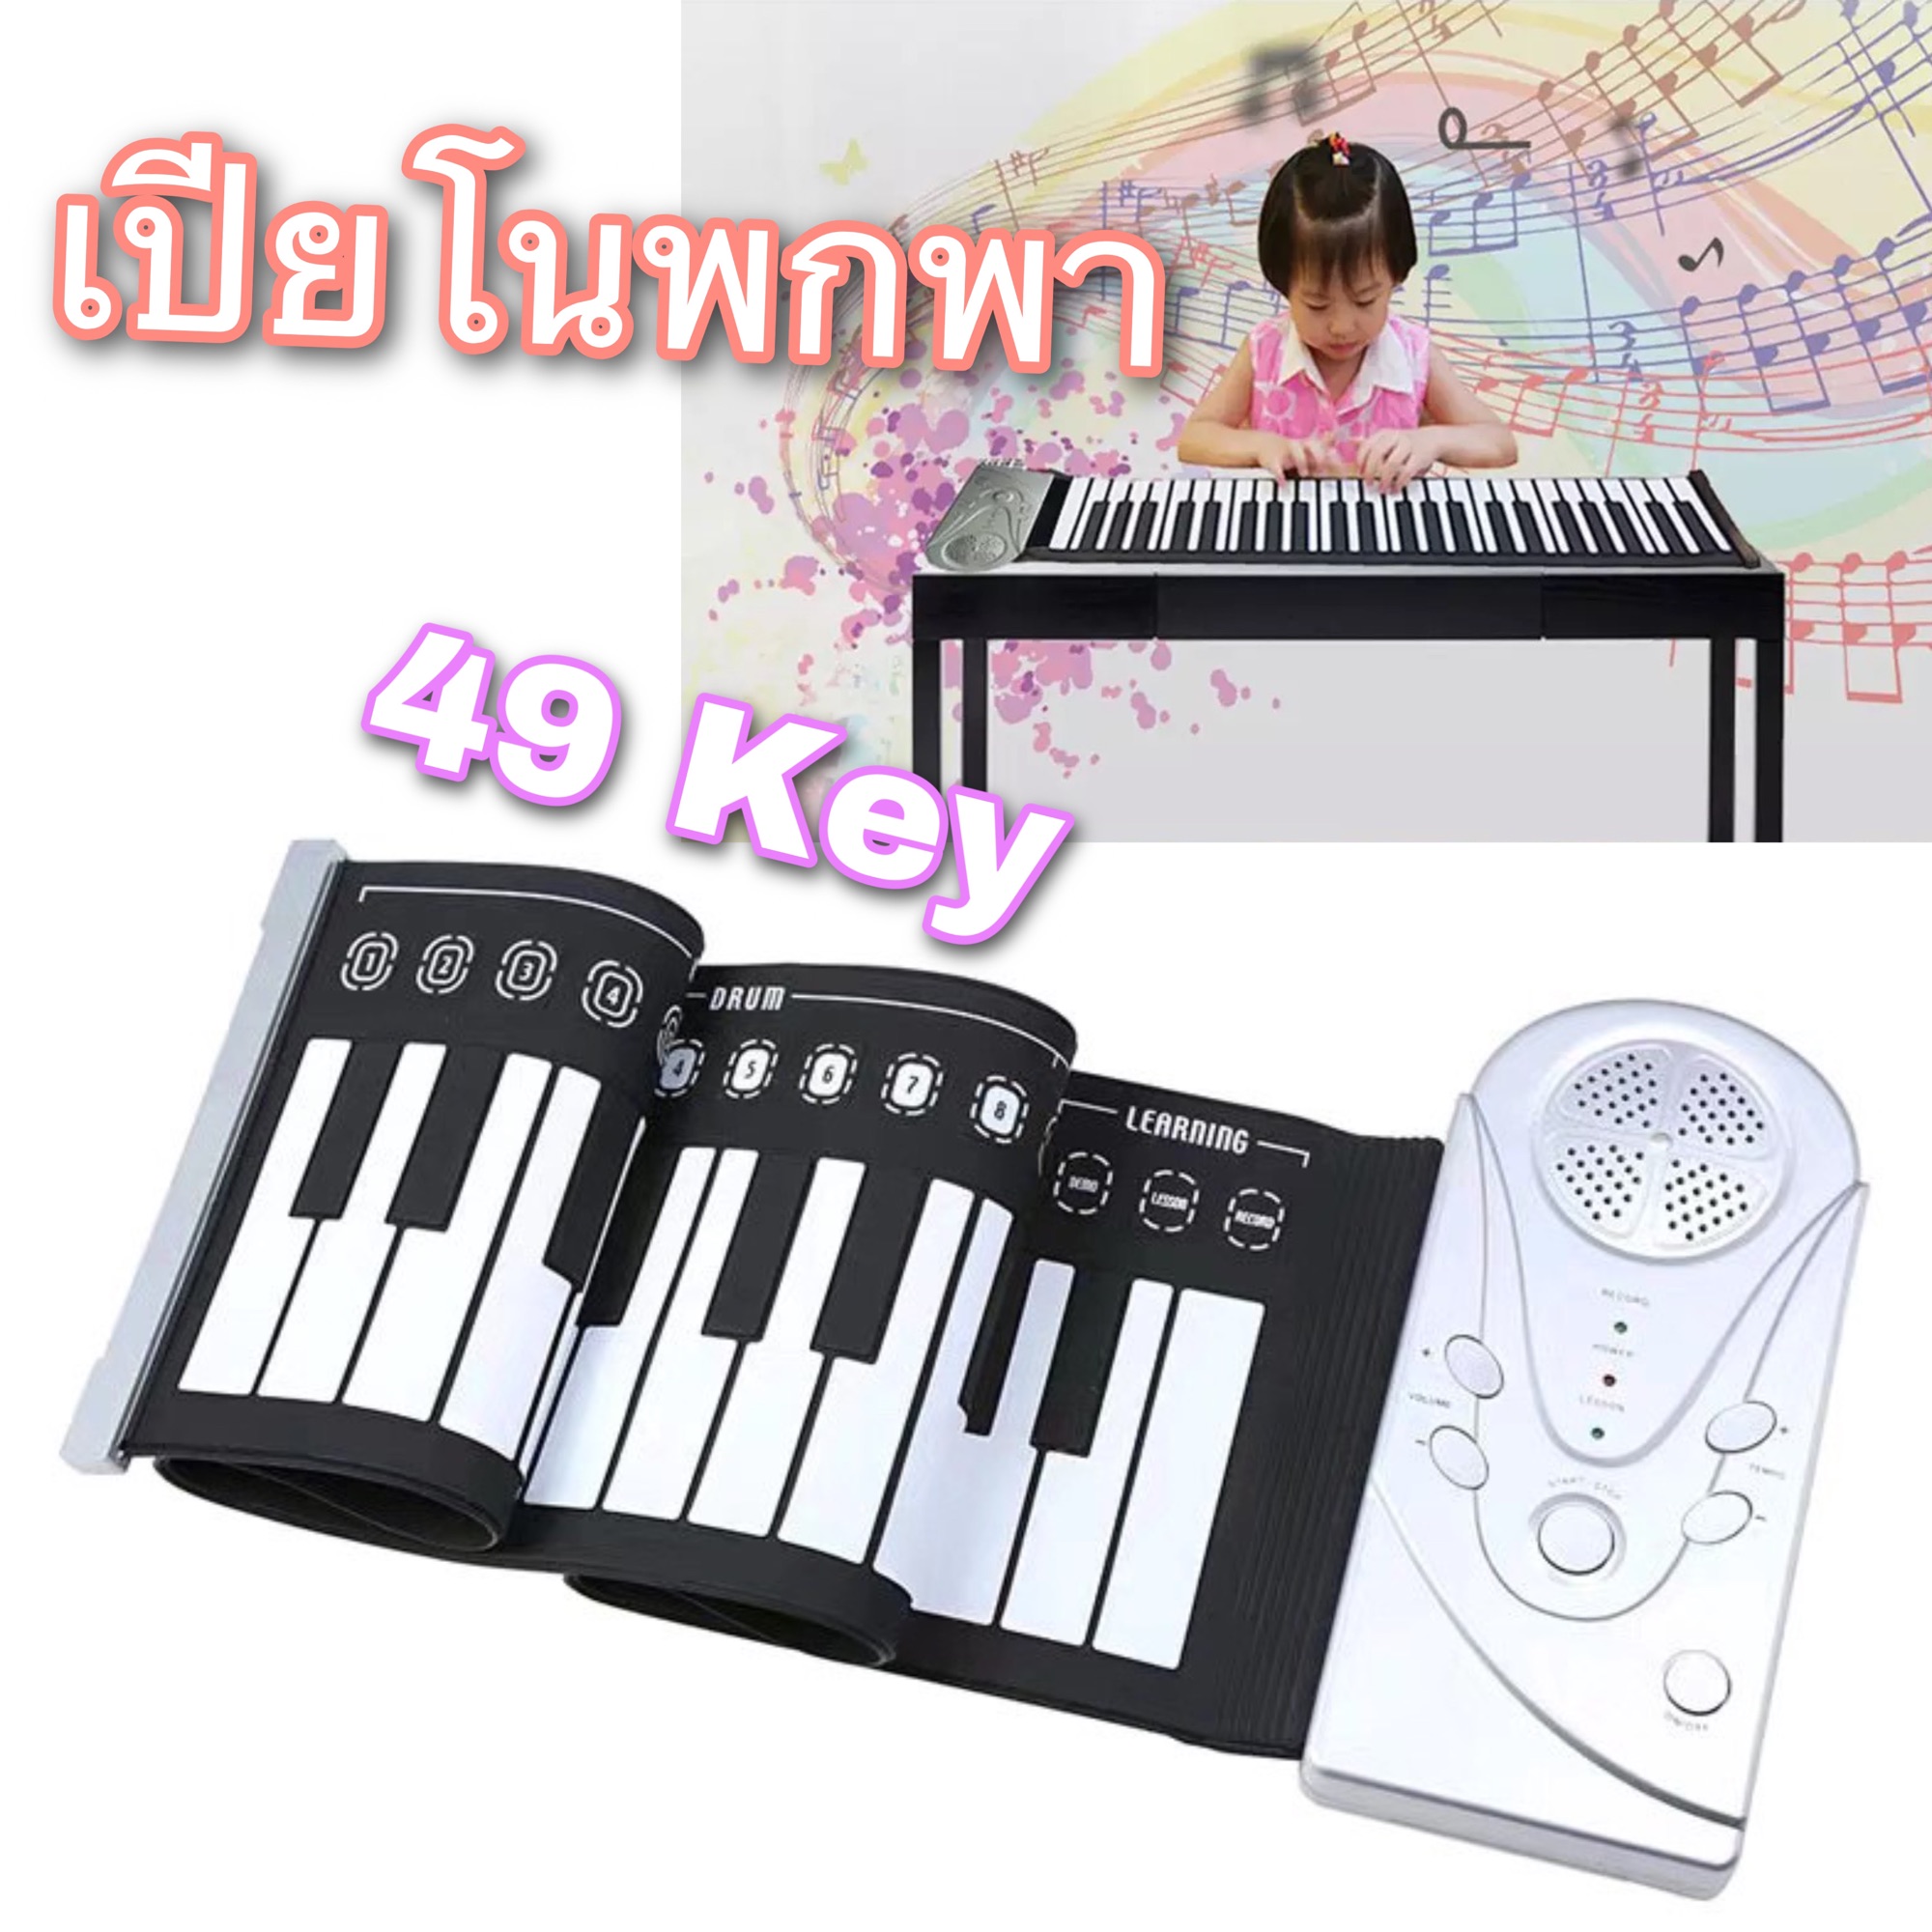 พร้อมส่ง✅ เปียโน เปียโนเด็ก piano Keyboards คีย์บอร์ด พกพา เครื่องดนตรี เด็ก เครื่อเปียโนพกพา 49 key มีลำโพงในตัว